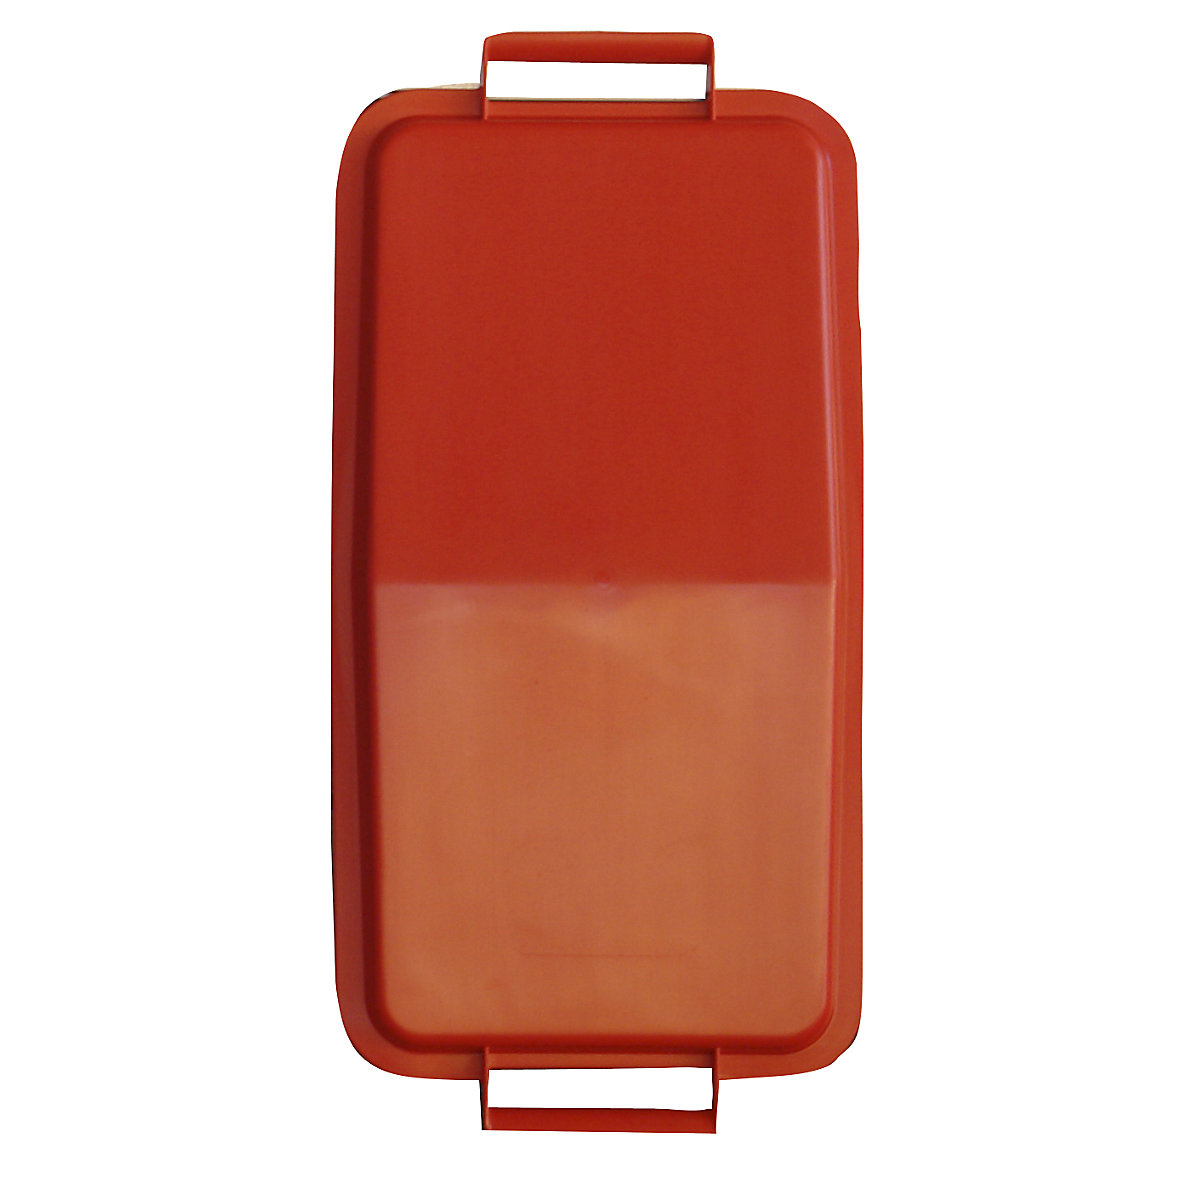 Steckdeckel, mit 2 Handgriffen, für Inhalt 60 l, lose aufliegend, rot